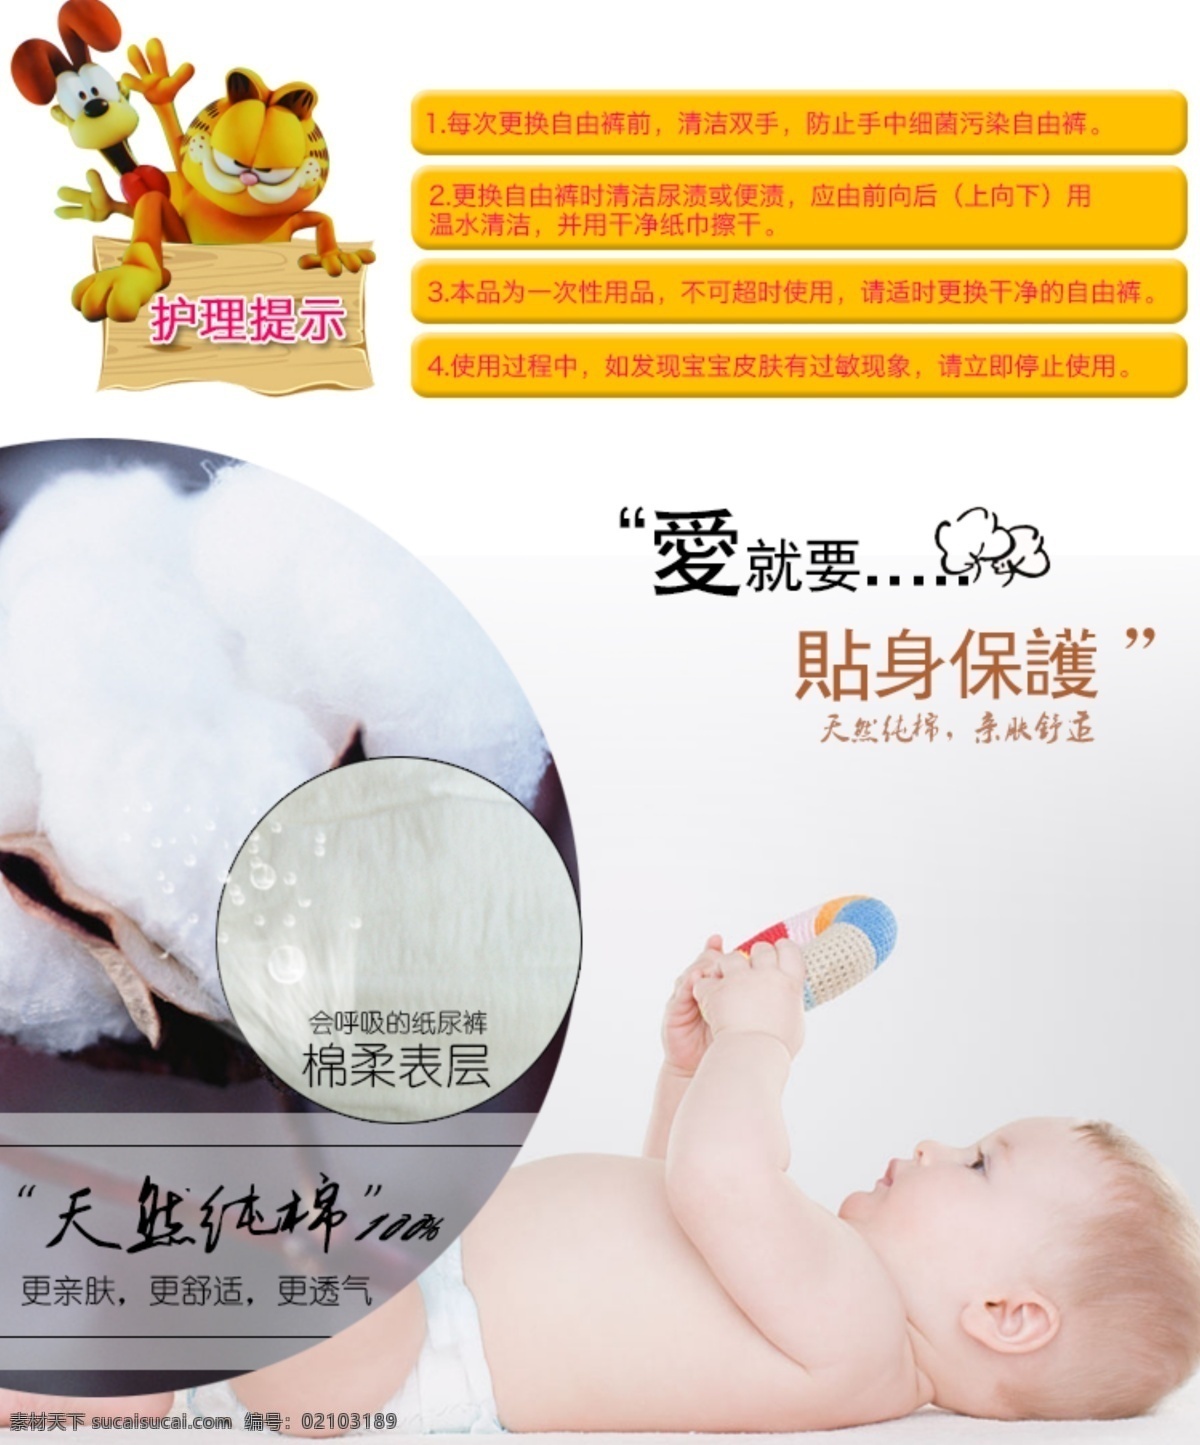 母婴 淘宝 玩具 儿童玩具 海报 促销 促销海报 母婴玩具 淘宝海报